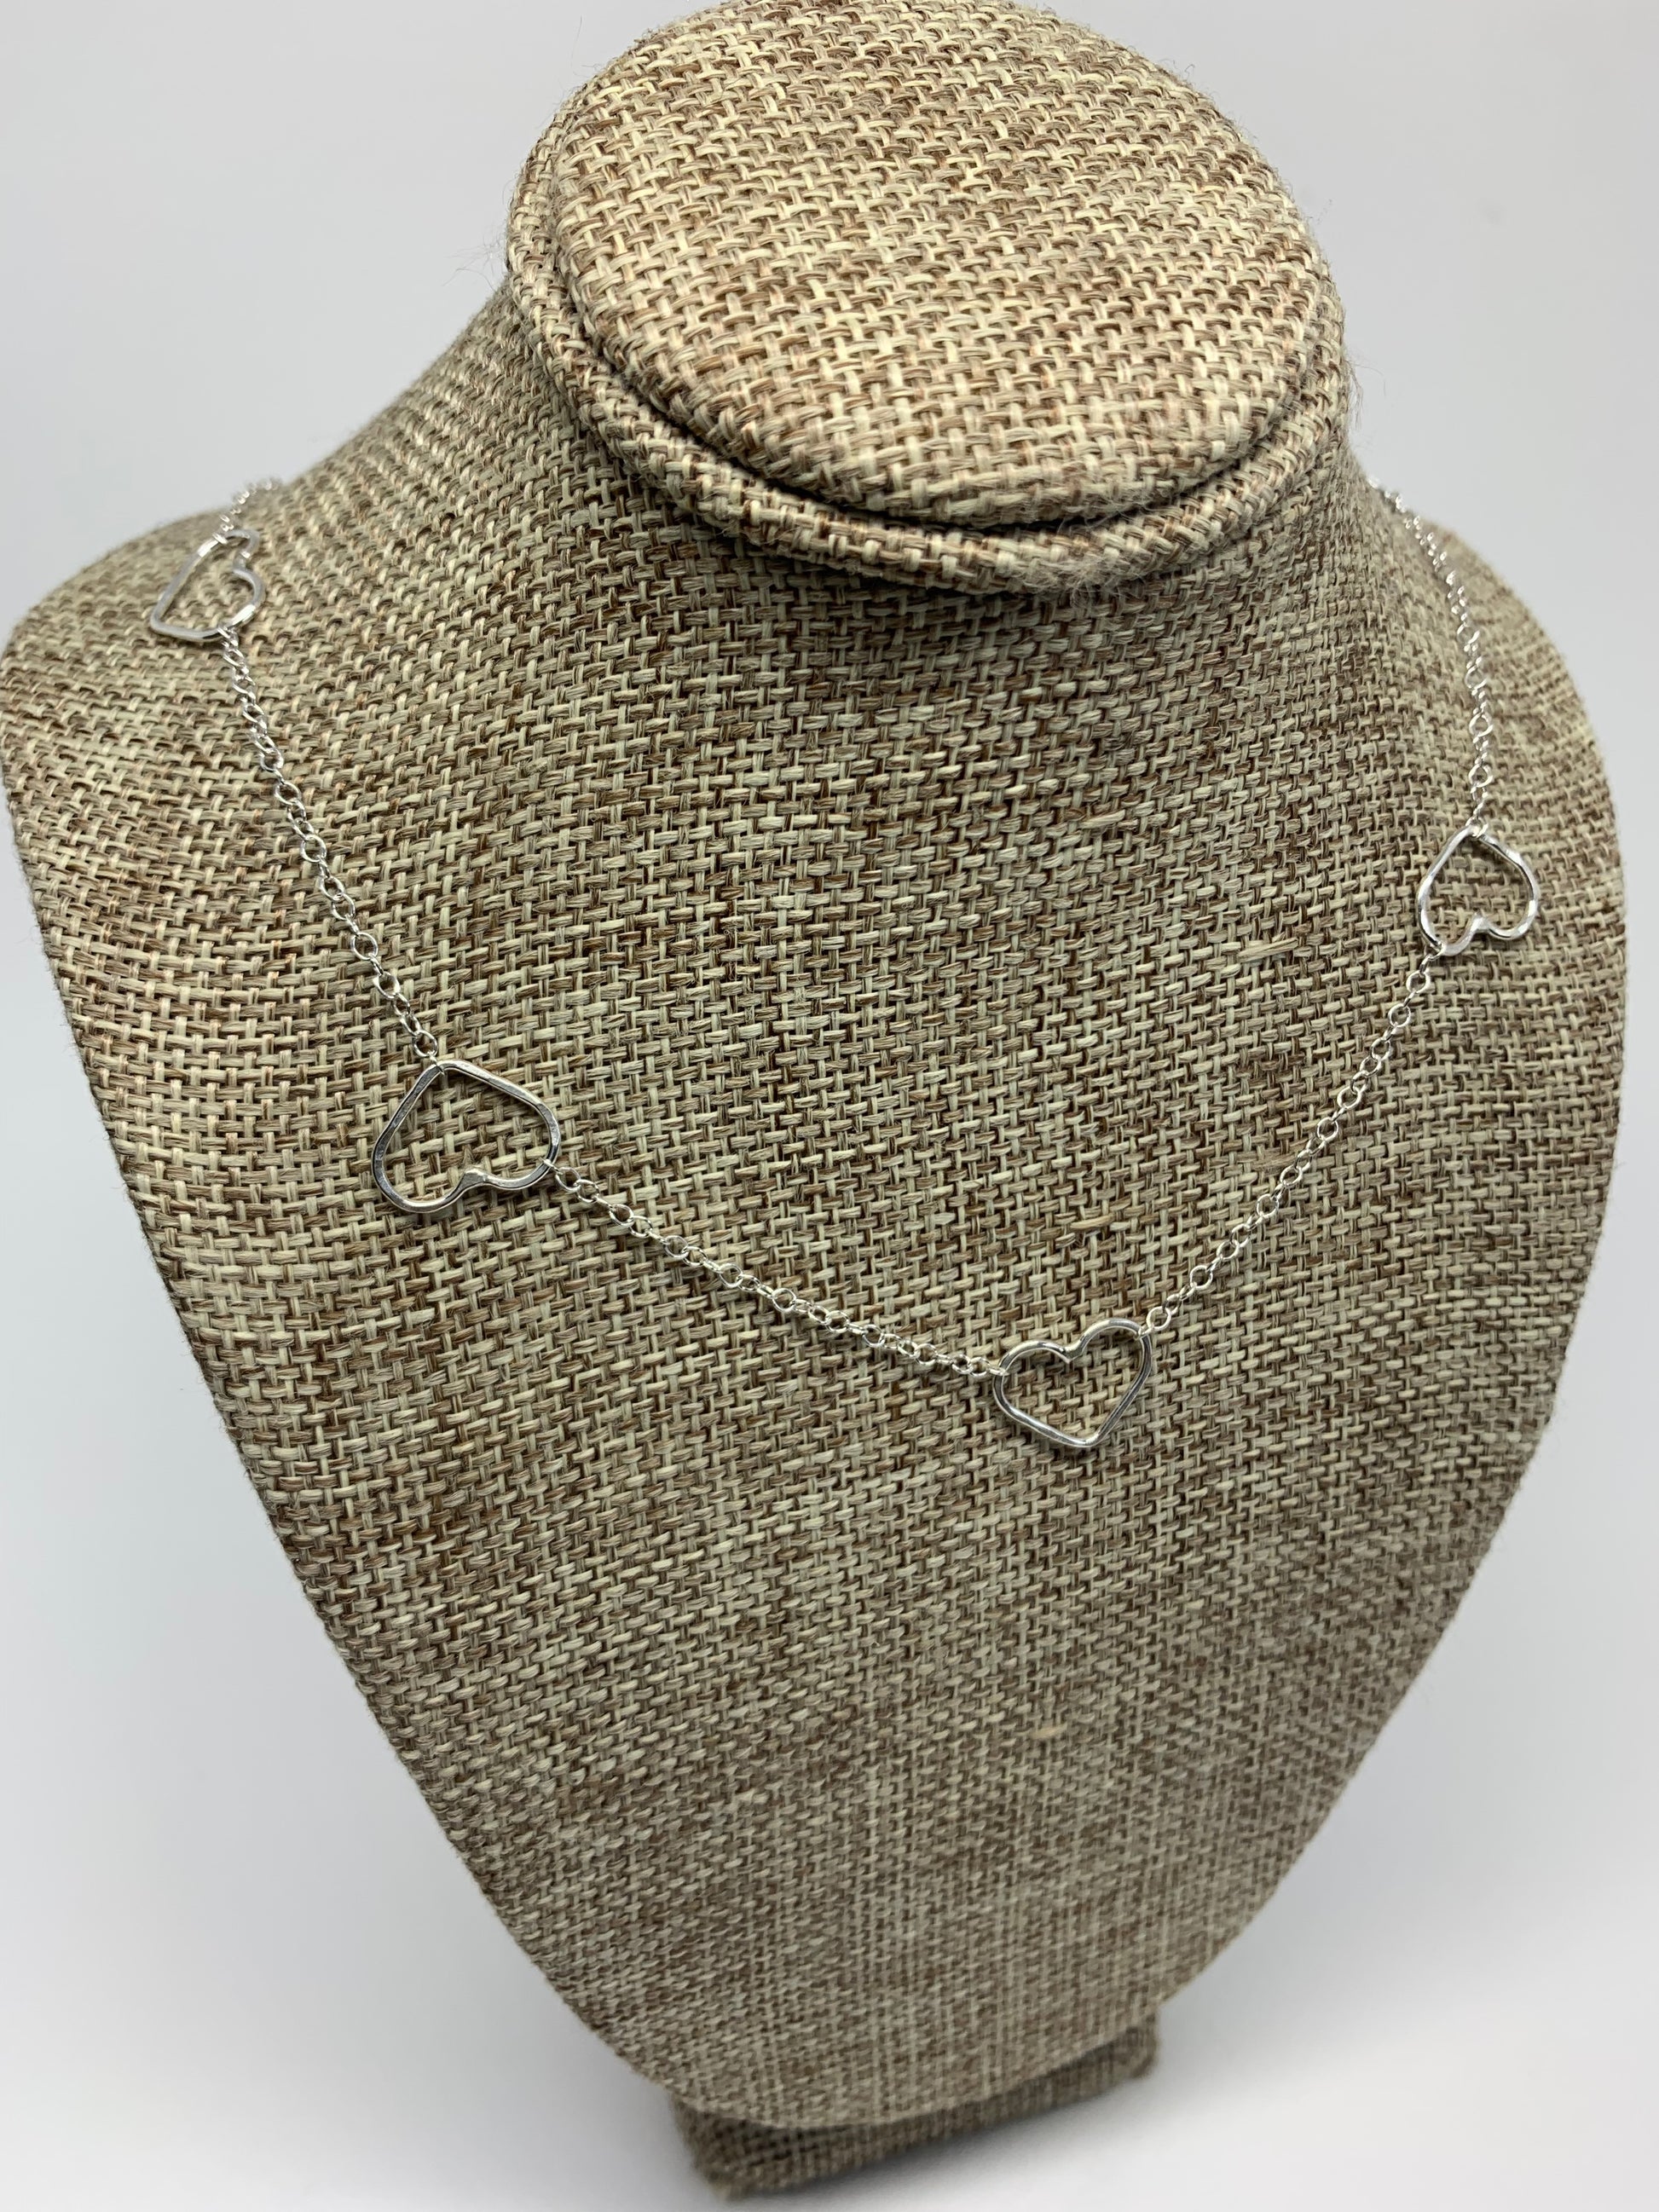 Heart Choker Necklace - Jennifer Cervelli Jewelry